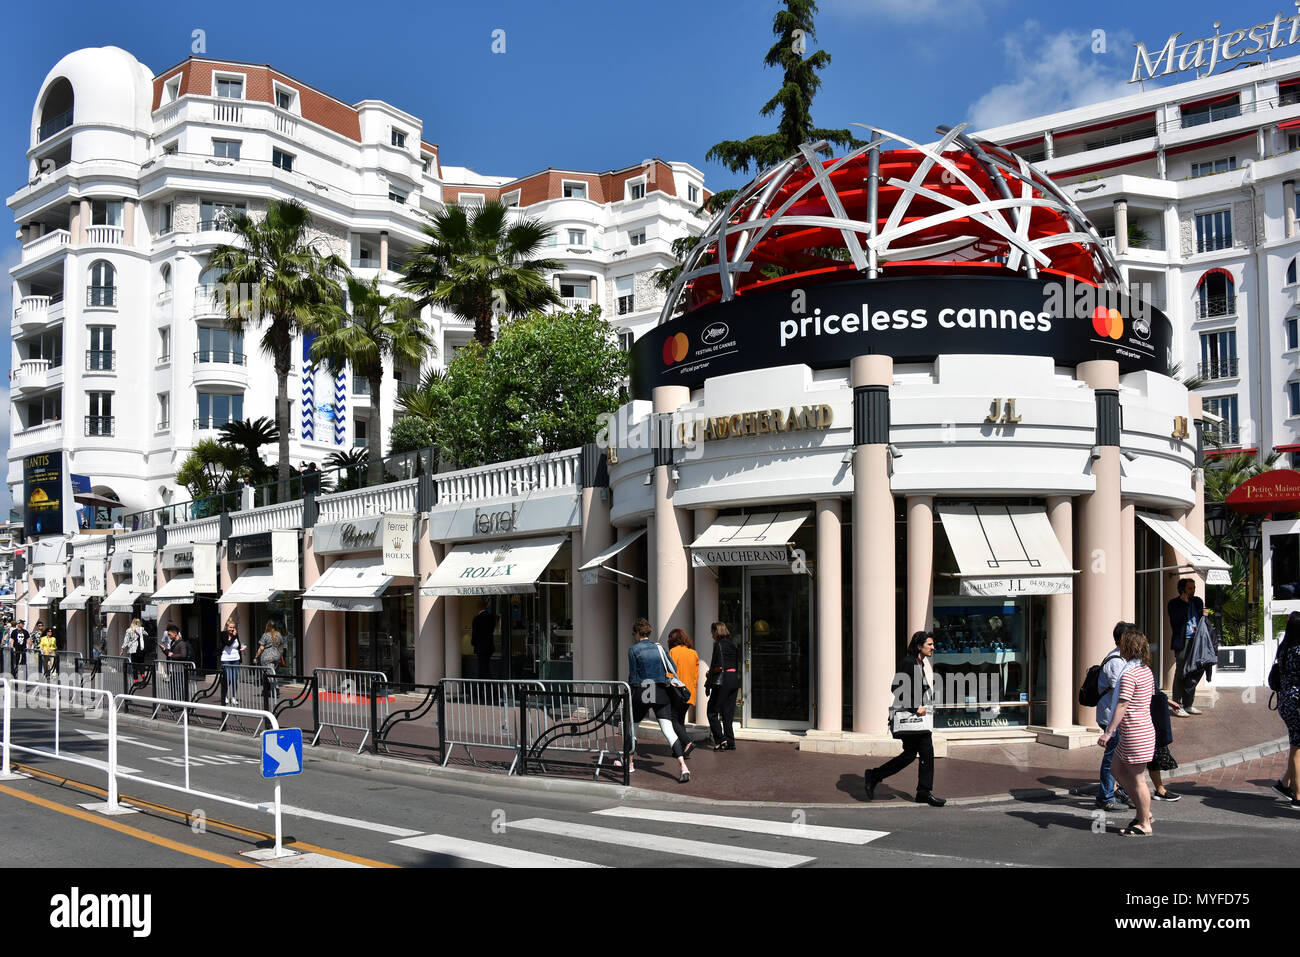 Cannes, Francia - 11 Maggio 2018: Boulevard de la Croisette che contiene high-end di negozi come Rolex, C Gaucherand e un annuncio per il Film Festival. Foto Stock